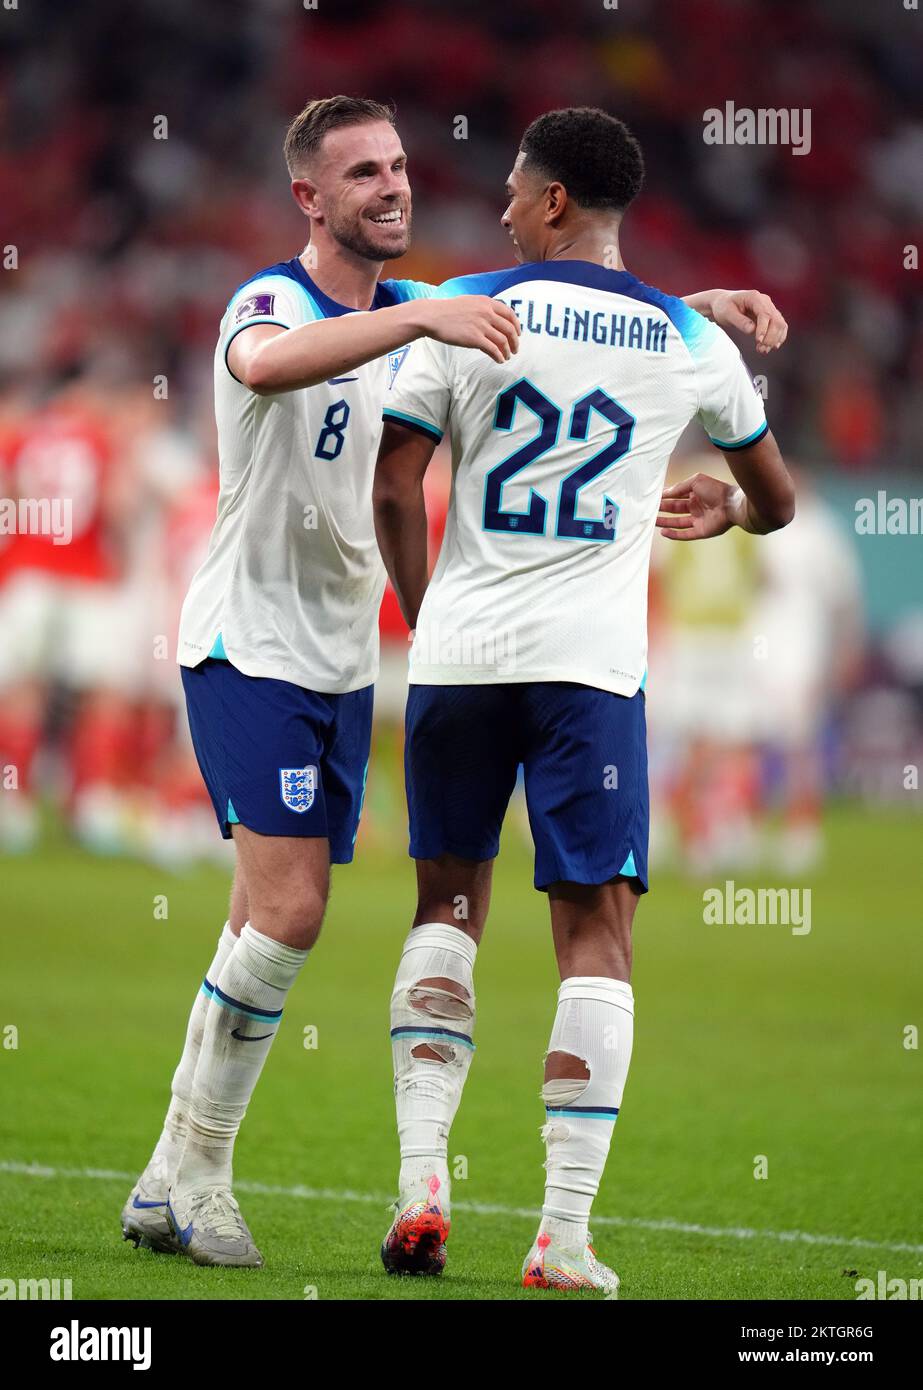 Jude Bellingham et Jordan Henderson en Angleterre après le match de la coupe du monde de la FIFA, groupe B, au stade Ahmad Bin Ali, Al Rayyan, Qatar. Date de la photo: Mardi 29 novembre 2022. Banque D'Images